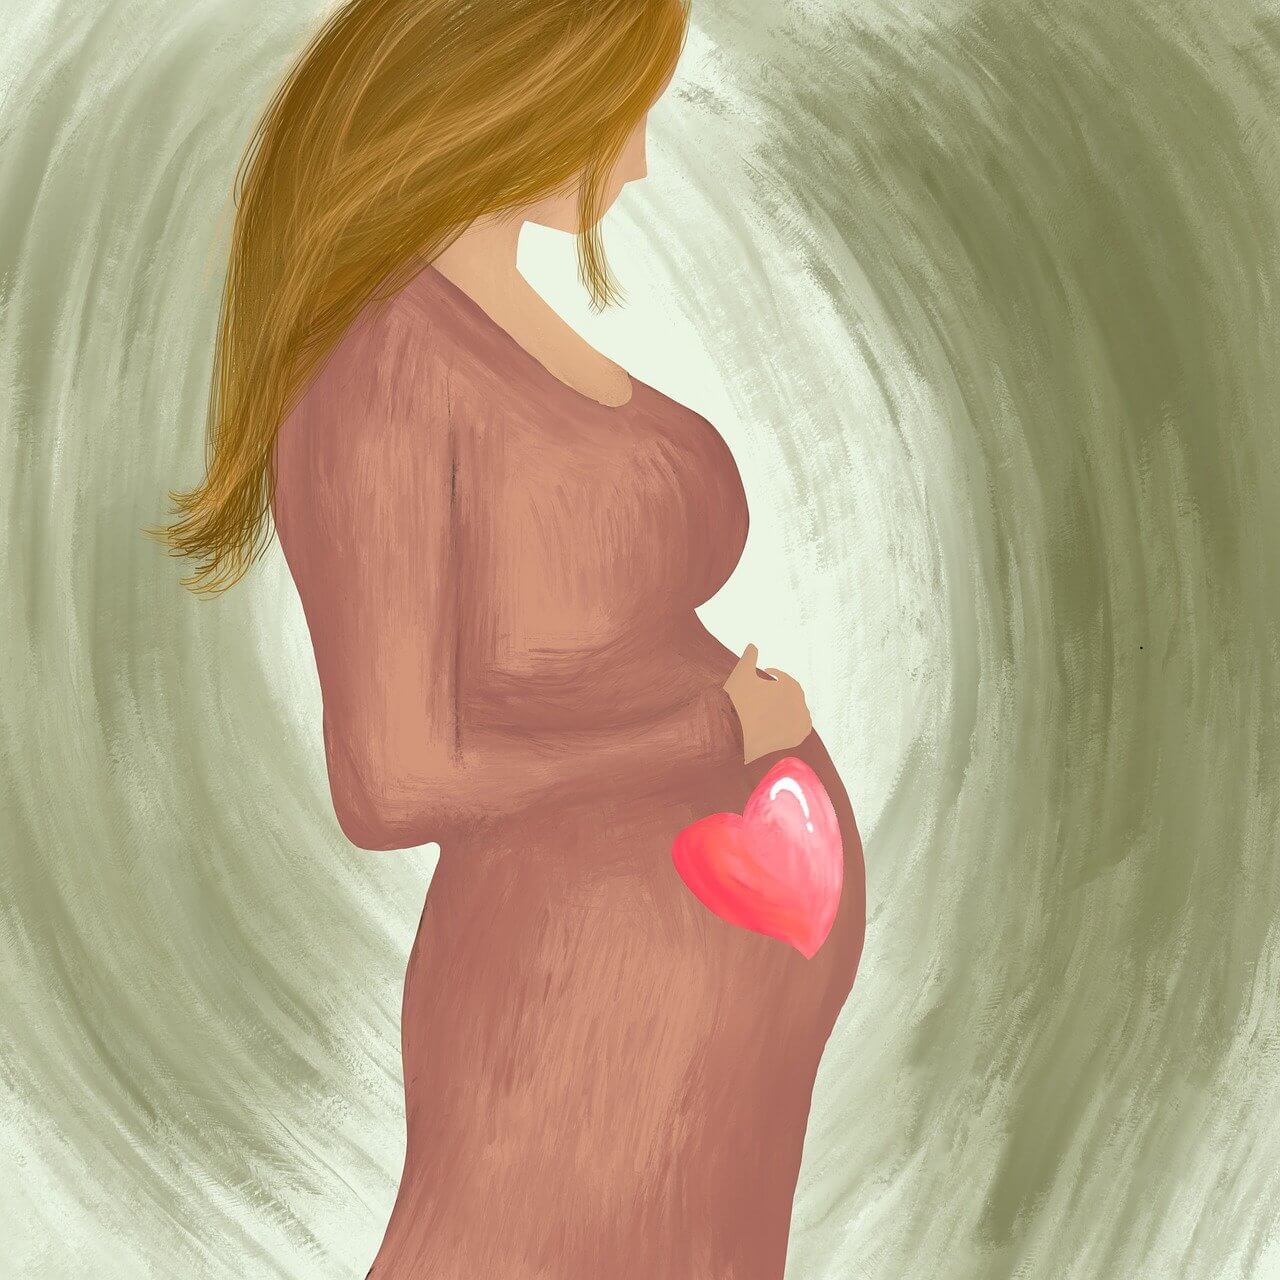 כל מה שרציתם לדעת על הריון בסיכון